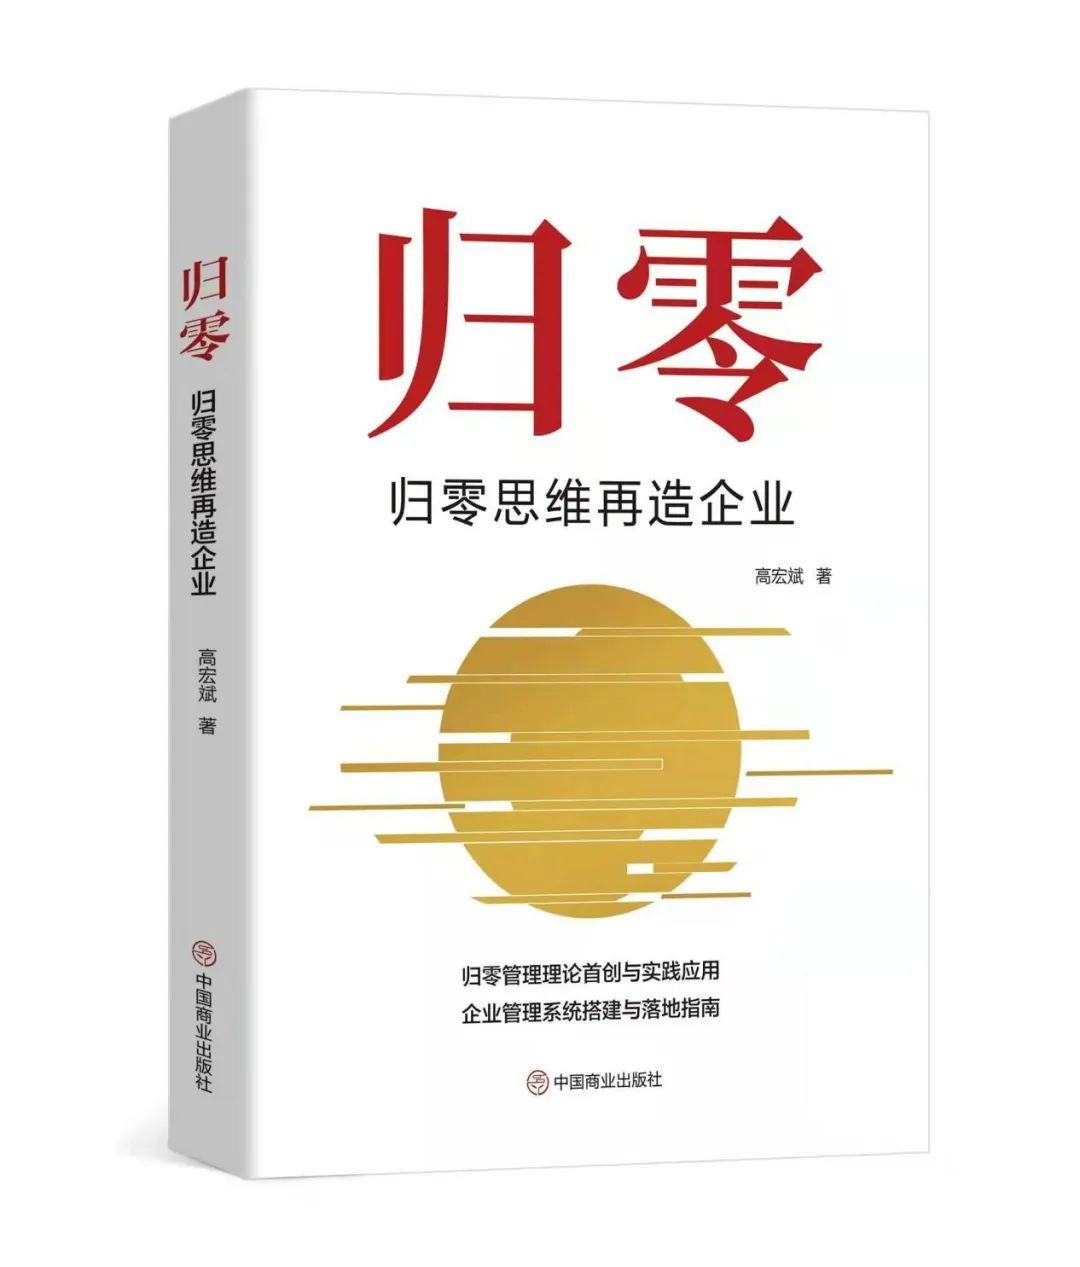 高宏斌老师管理学著作《归零》出版发行。